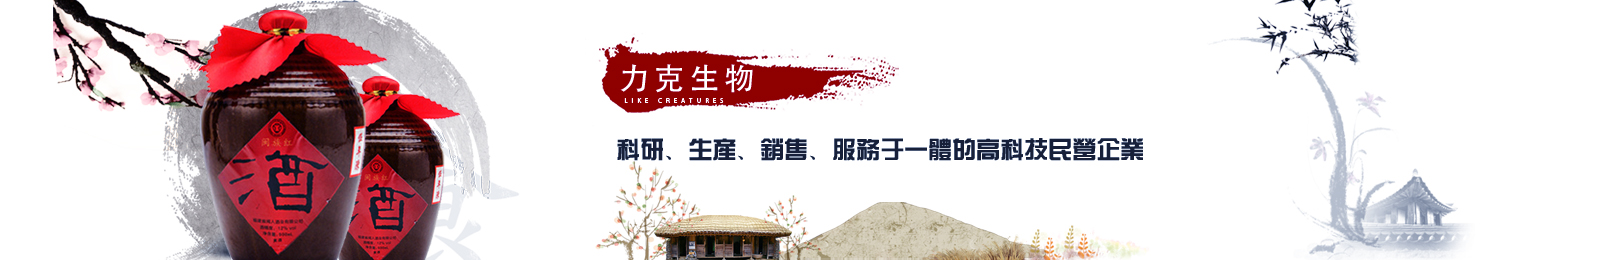 鸿运国际·(中国游)官方网站